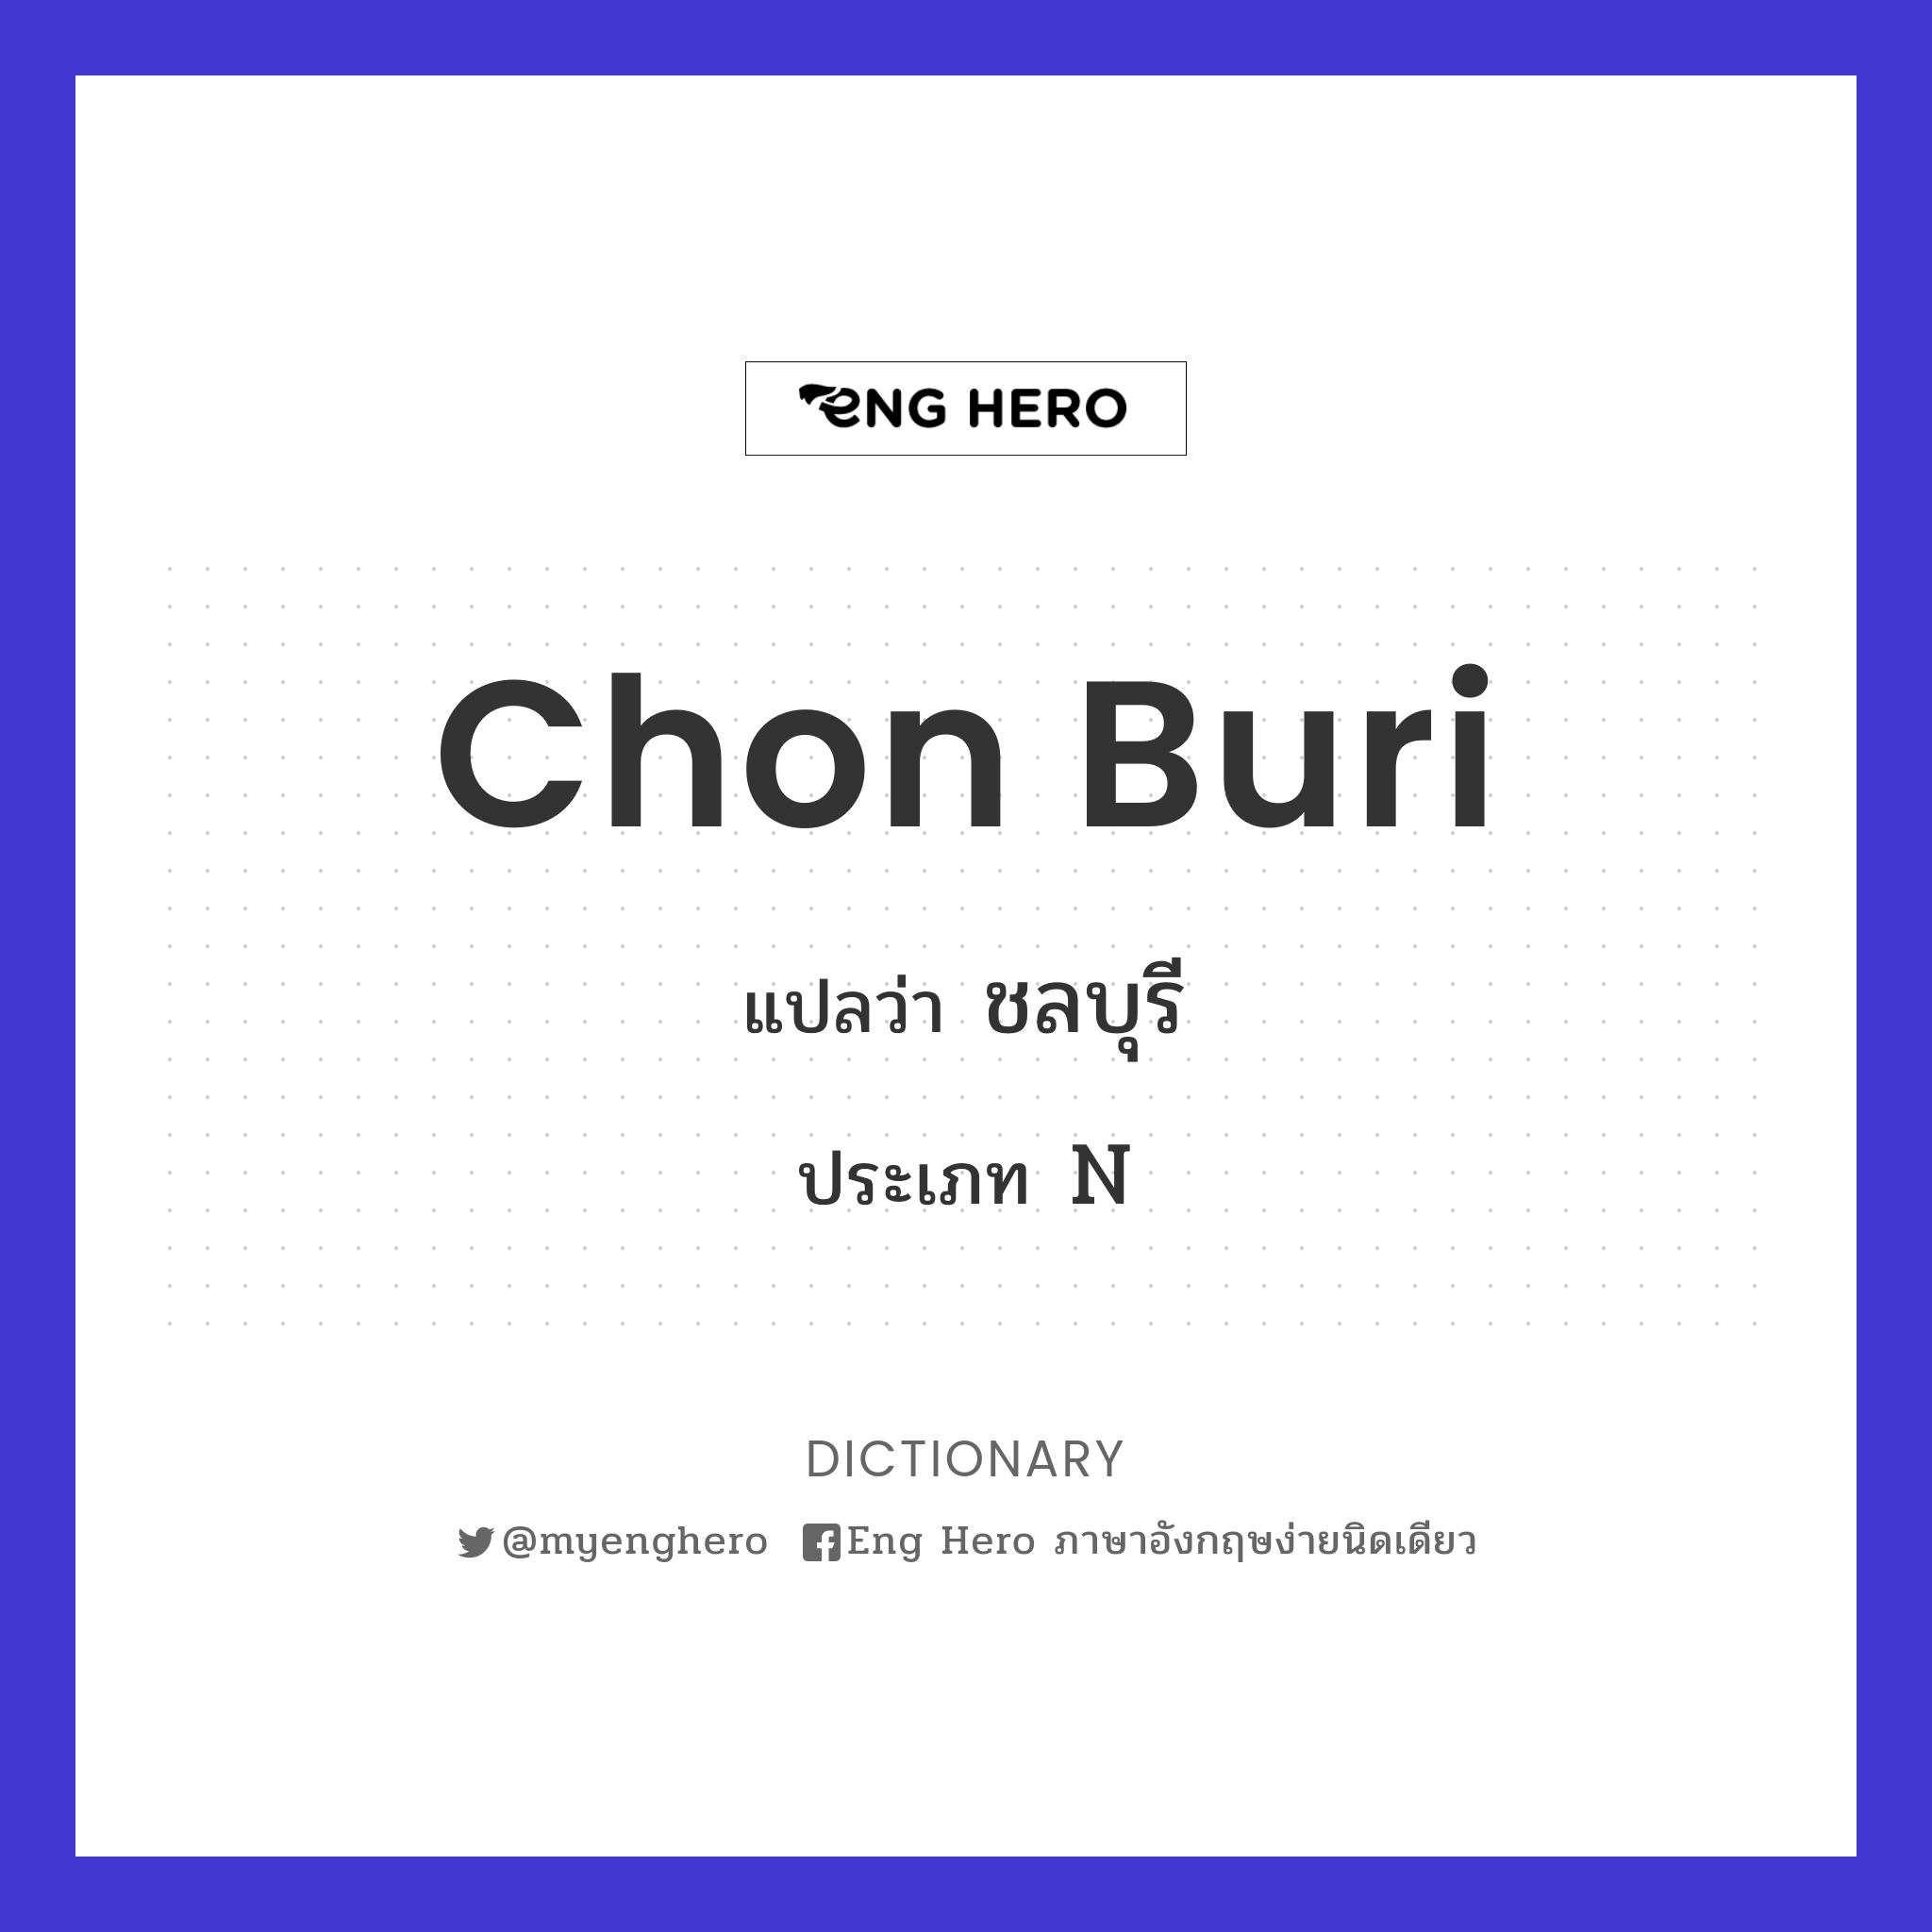 Chon Buri